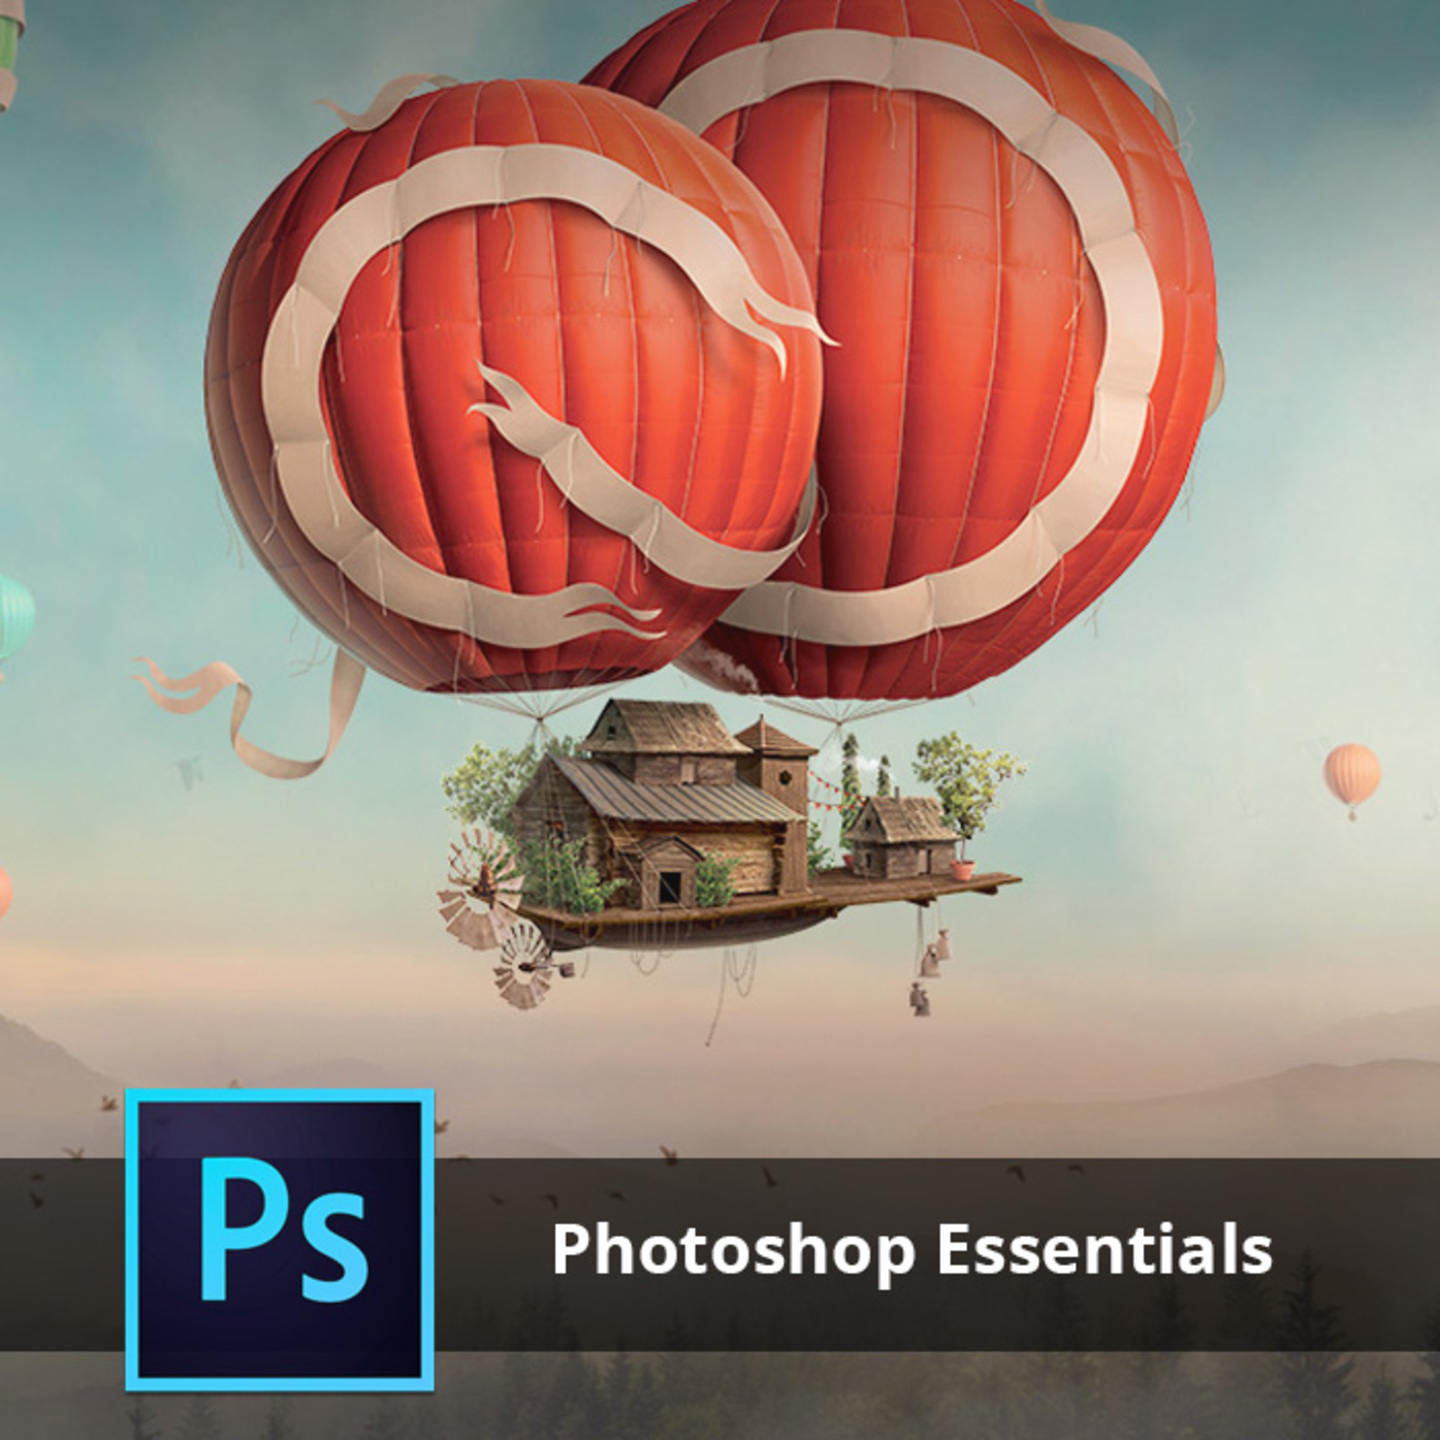 Adobe Training - Photoshop Essentials